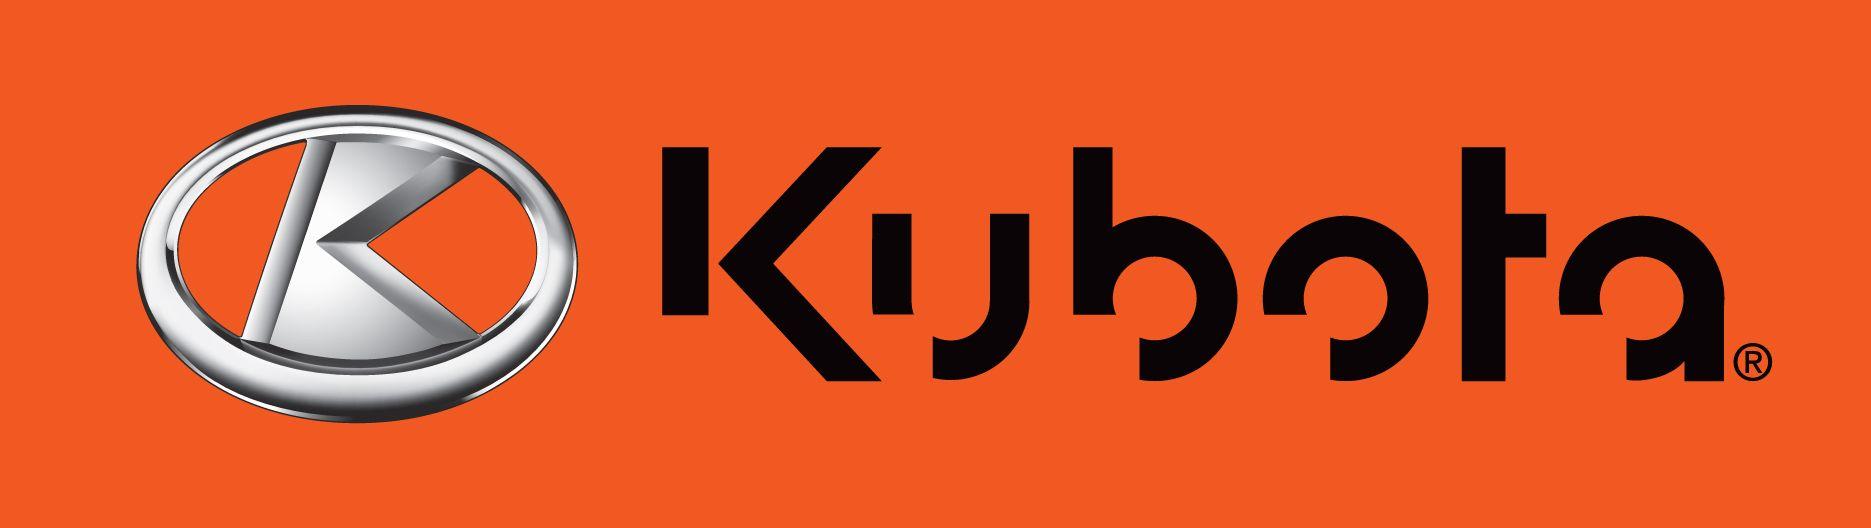 Kubota Logo - The new Kubota logo! | Kubota | Kubota, Tractors, Logos